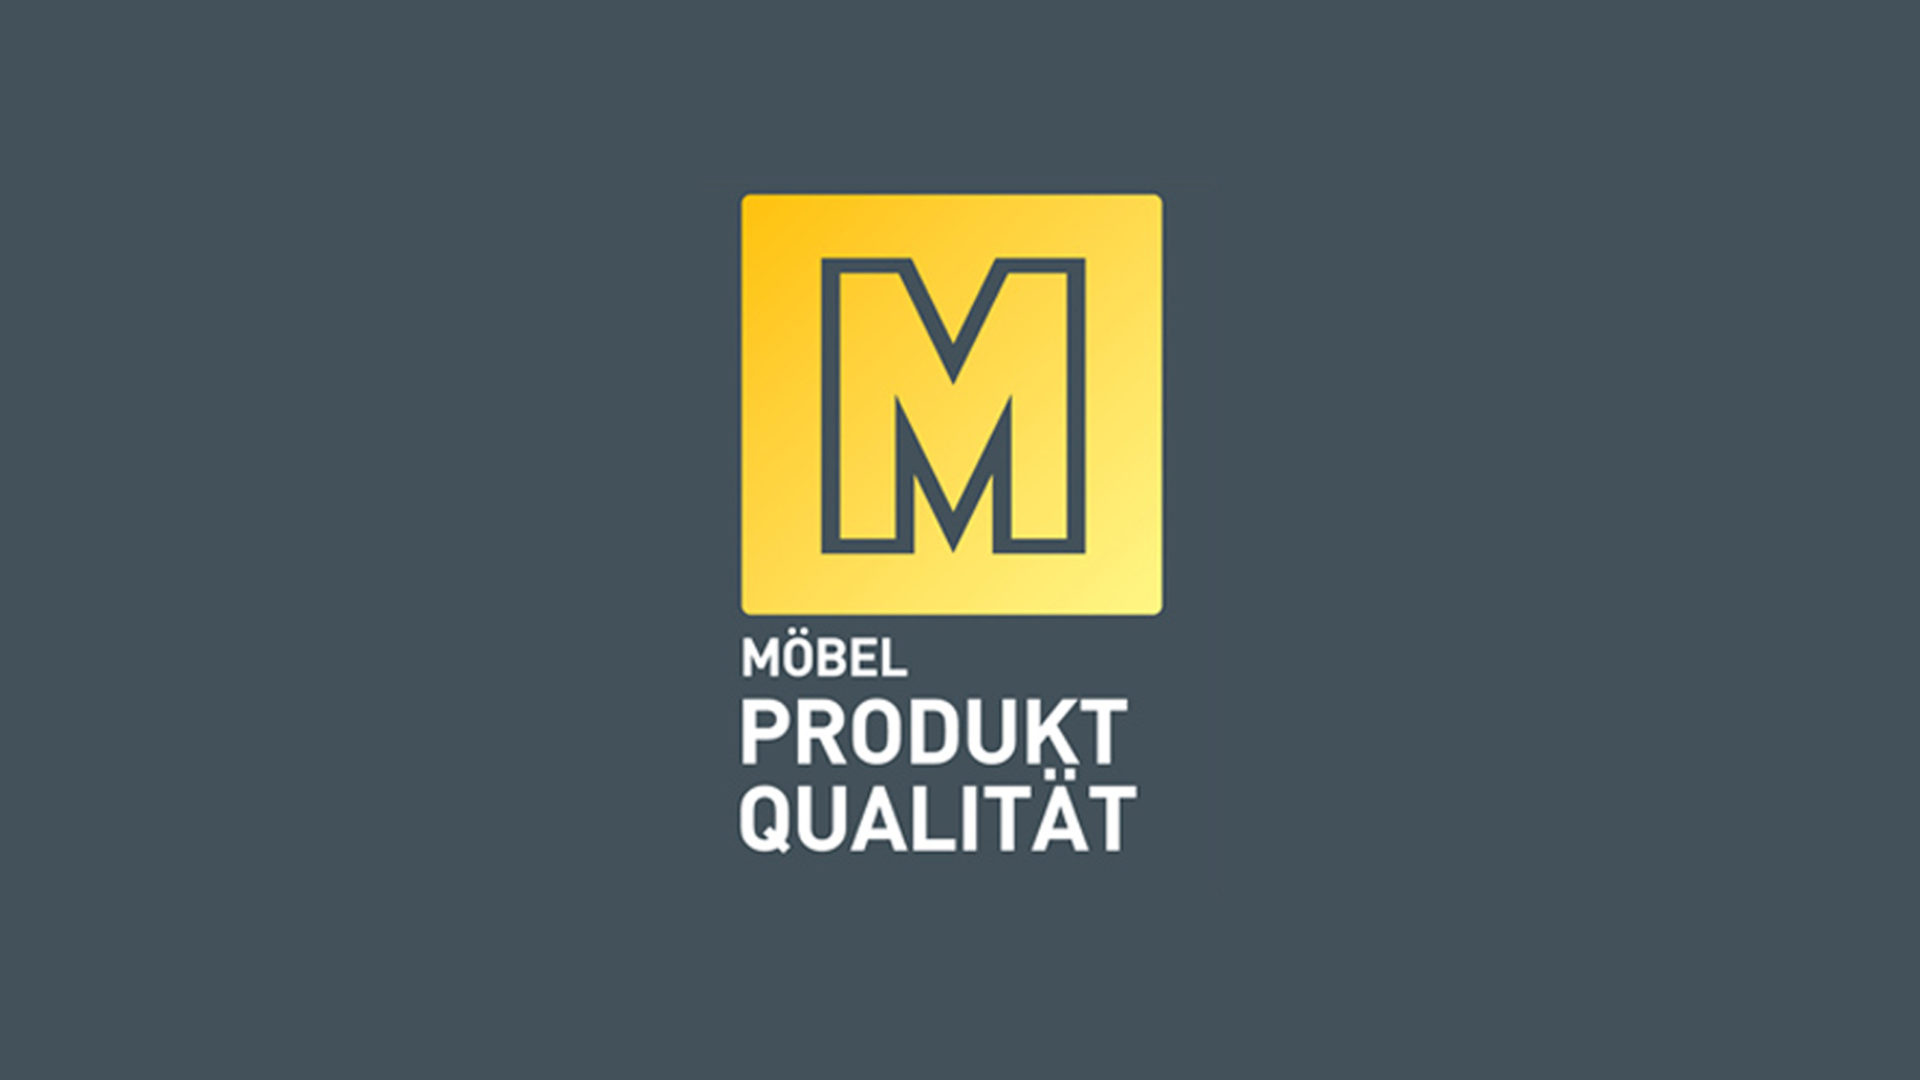 Das Goldene M für Möbel Qualität als Gütesiegel